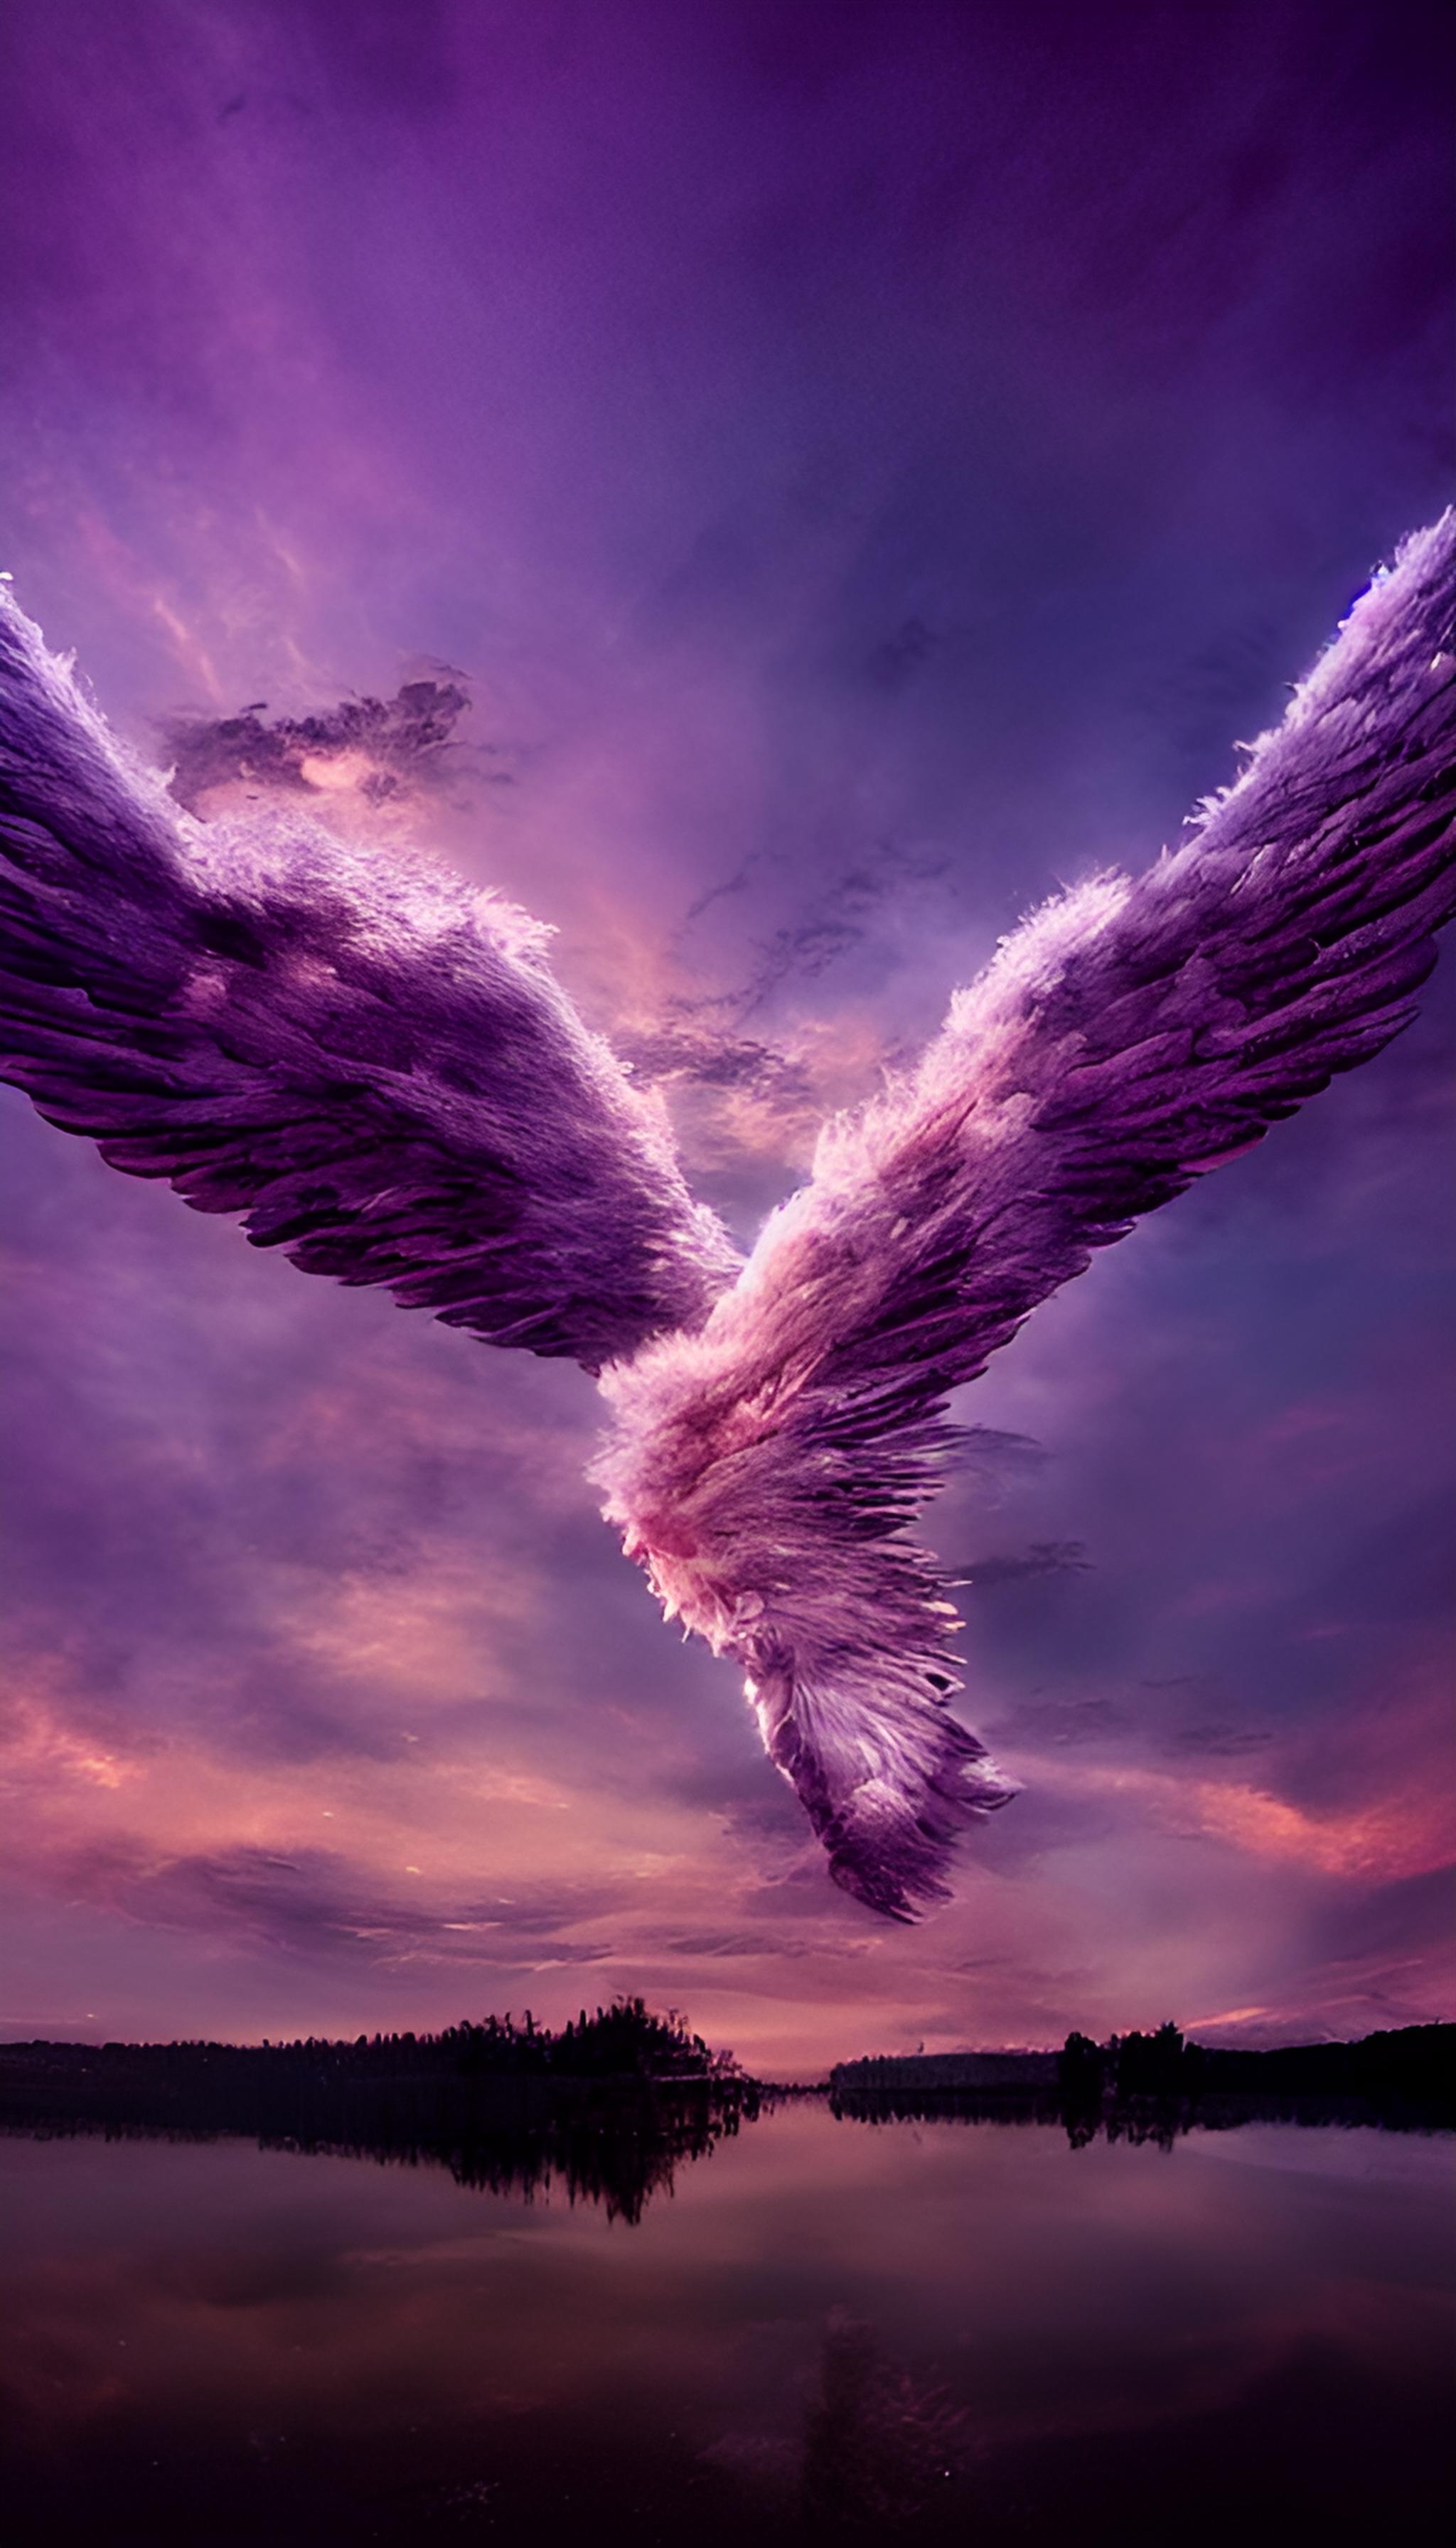 粉色天使的翅膀